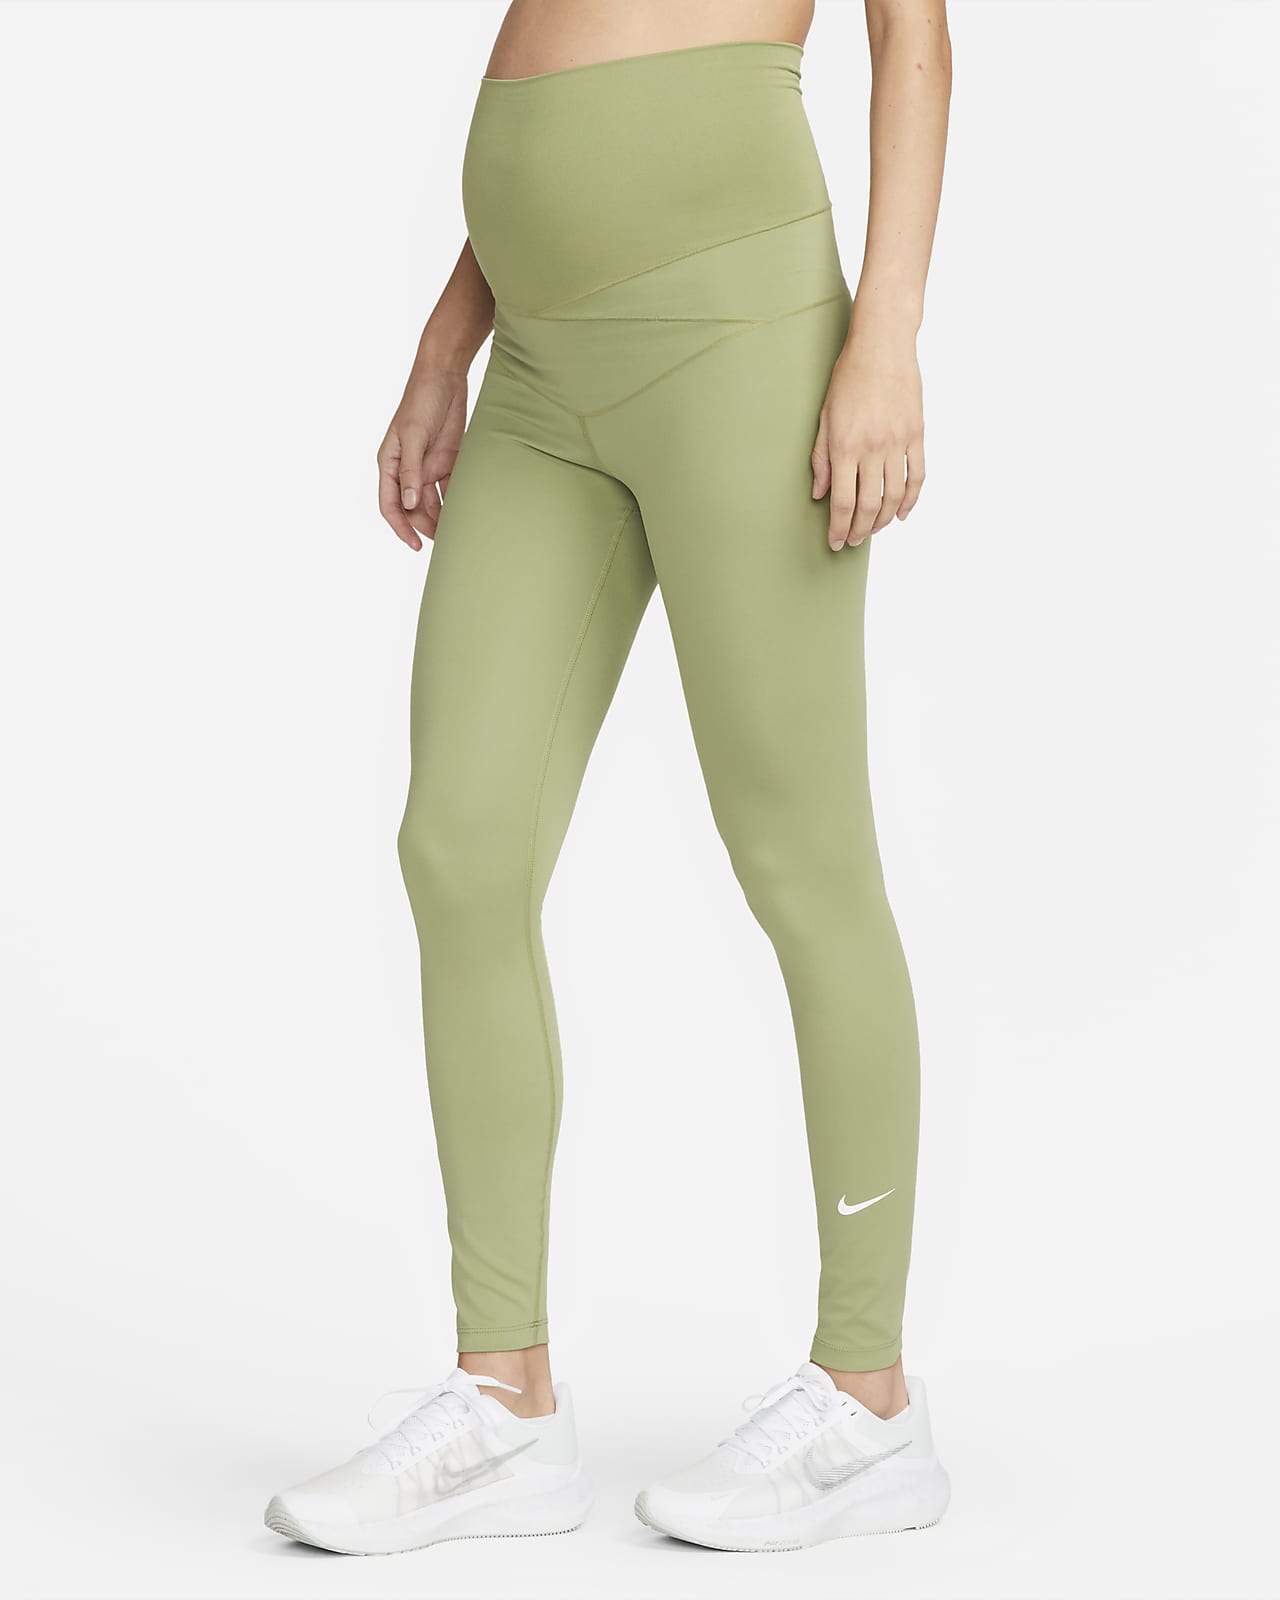 Immigratie bonen Toestemming Nike One (M) Legging met hoge taille voor dames (positiekleding). Nike NL